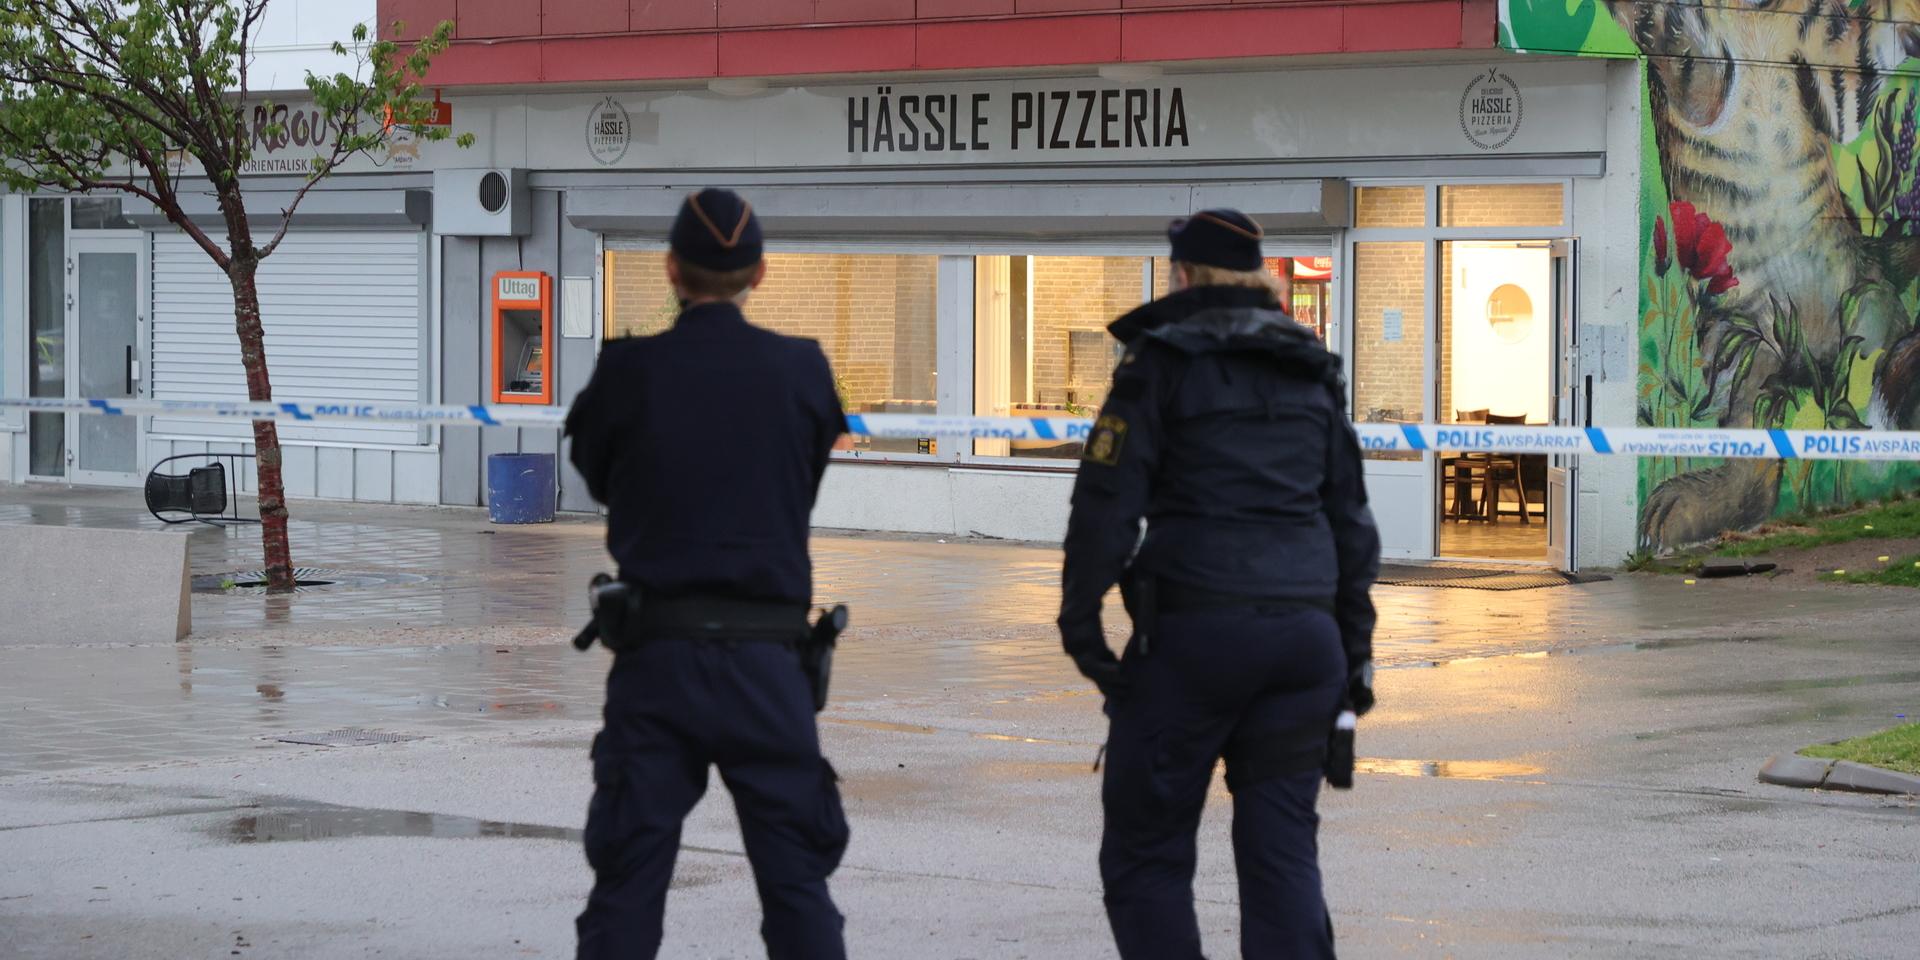 Två personer skottskadades på en pizzeria i stadsdelen Hässleholmen i Borås. 